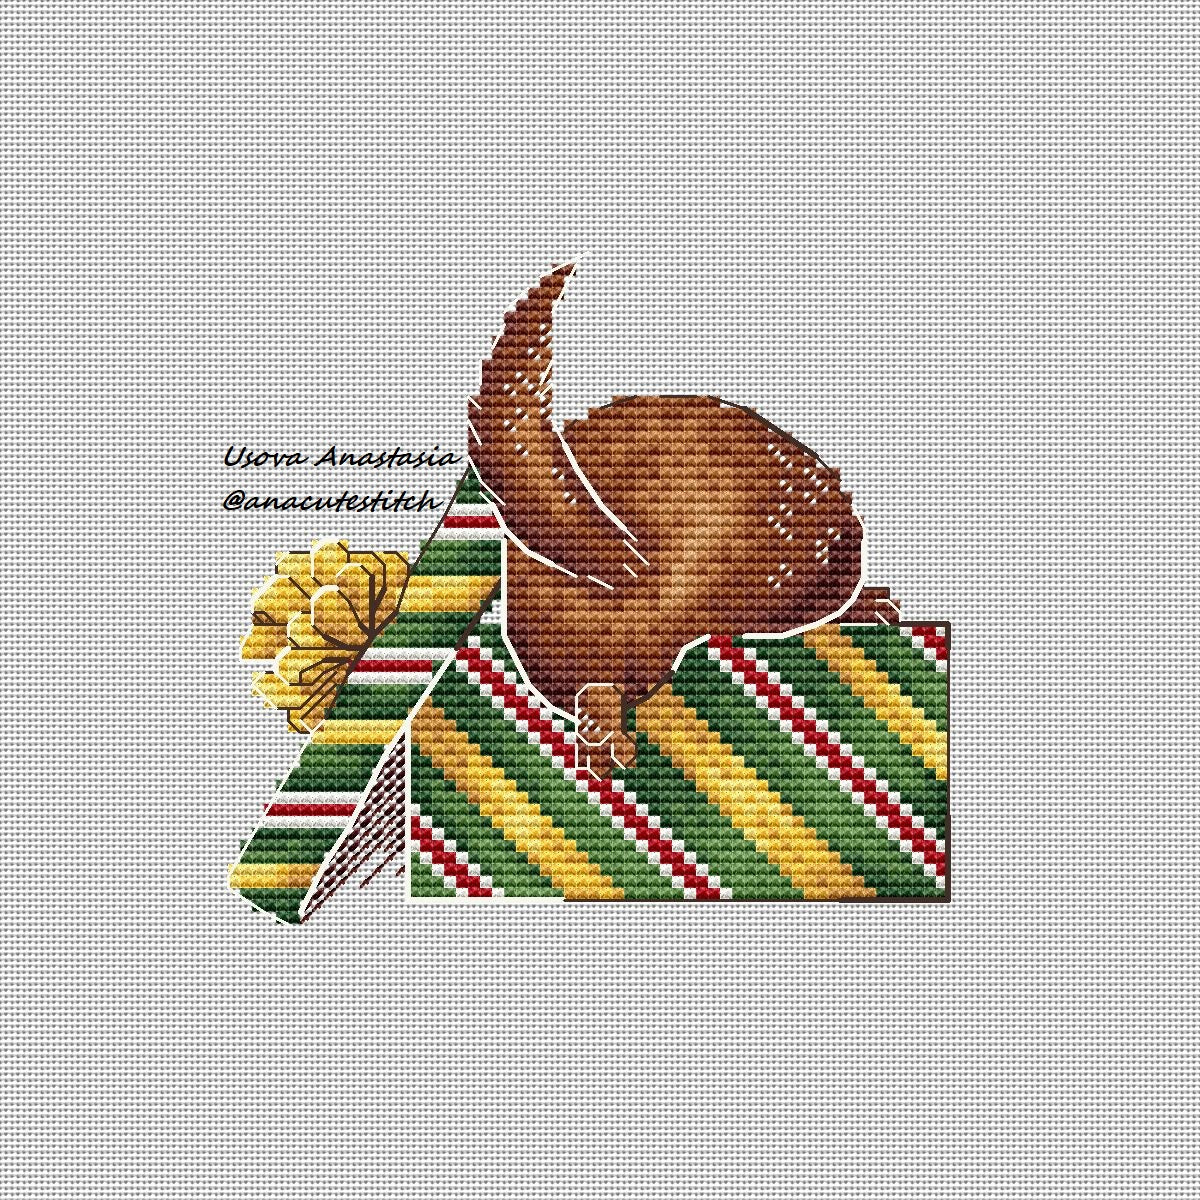 Digital Cross Stitch Pattern "Christmas gift"